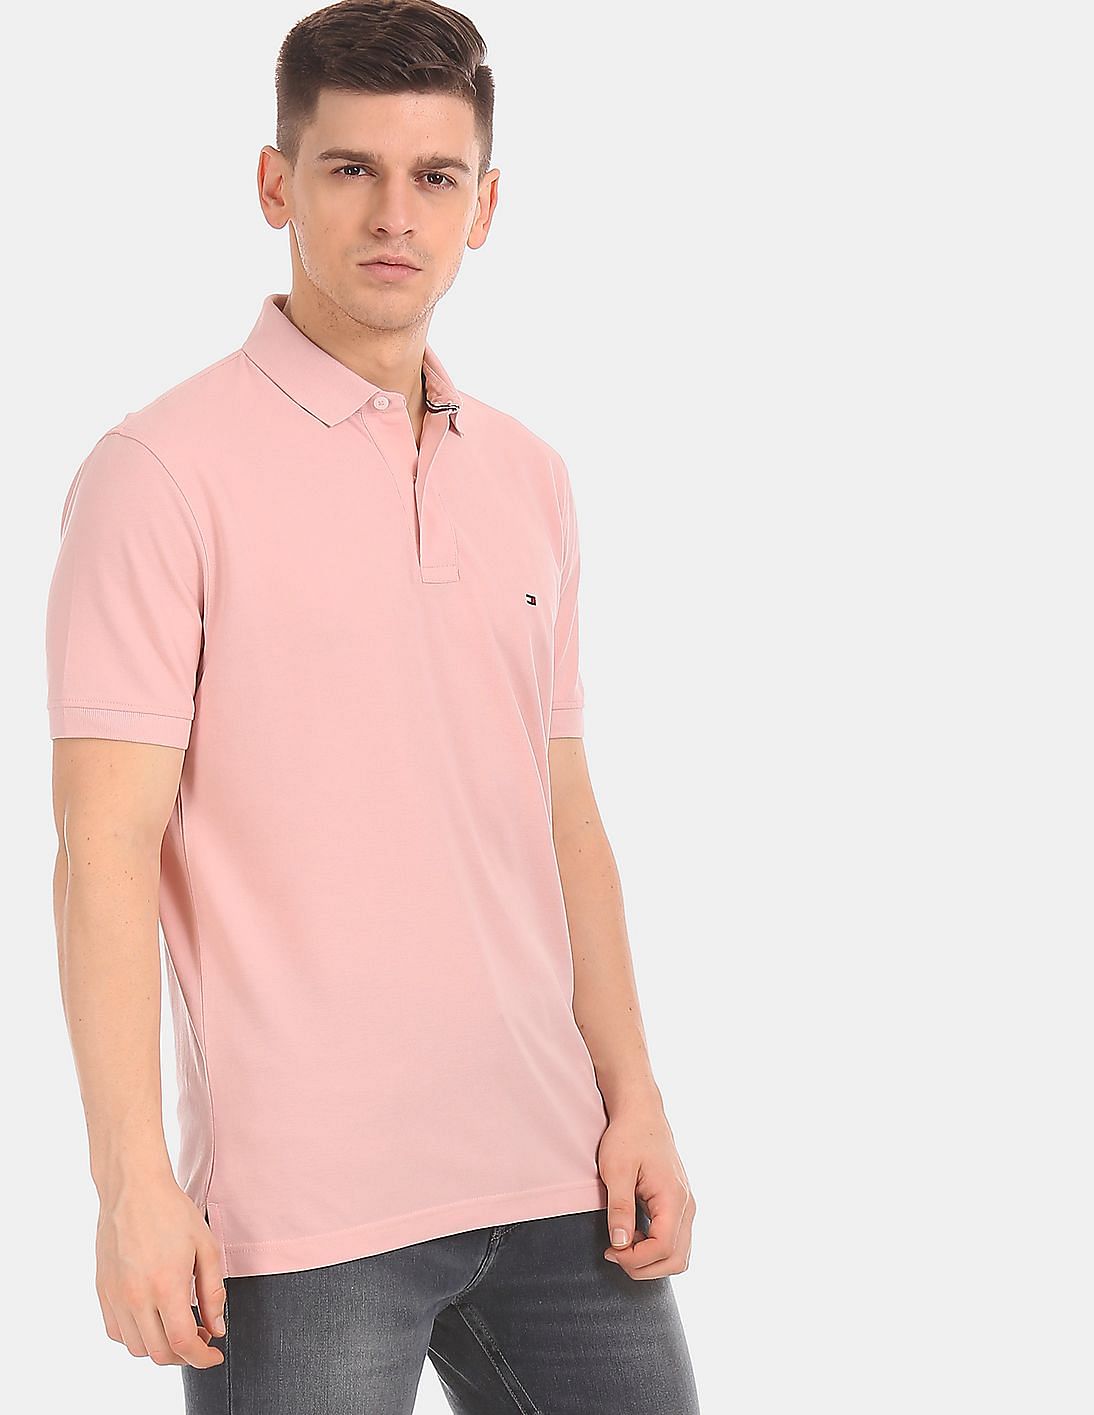 Buy Tommy Hilfiger Men Light Pink Regular Fit Solid Pique Polo Shirt ...